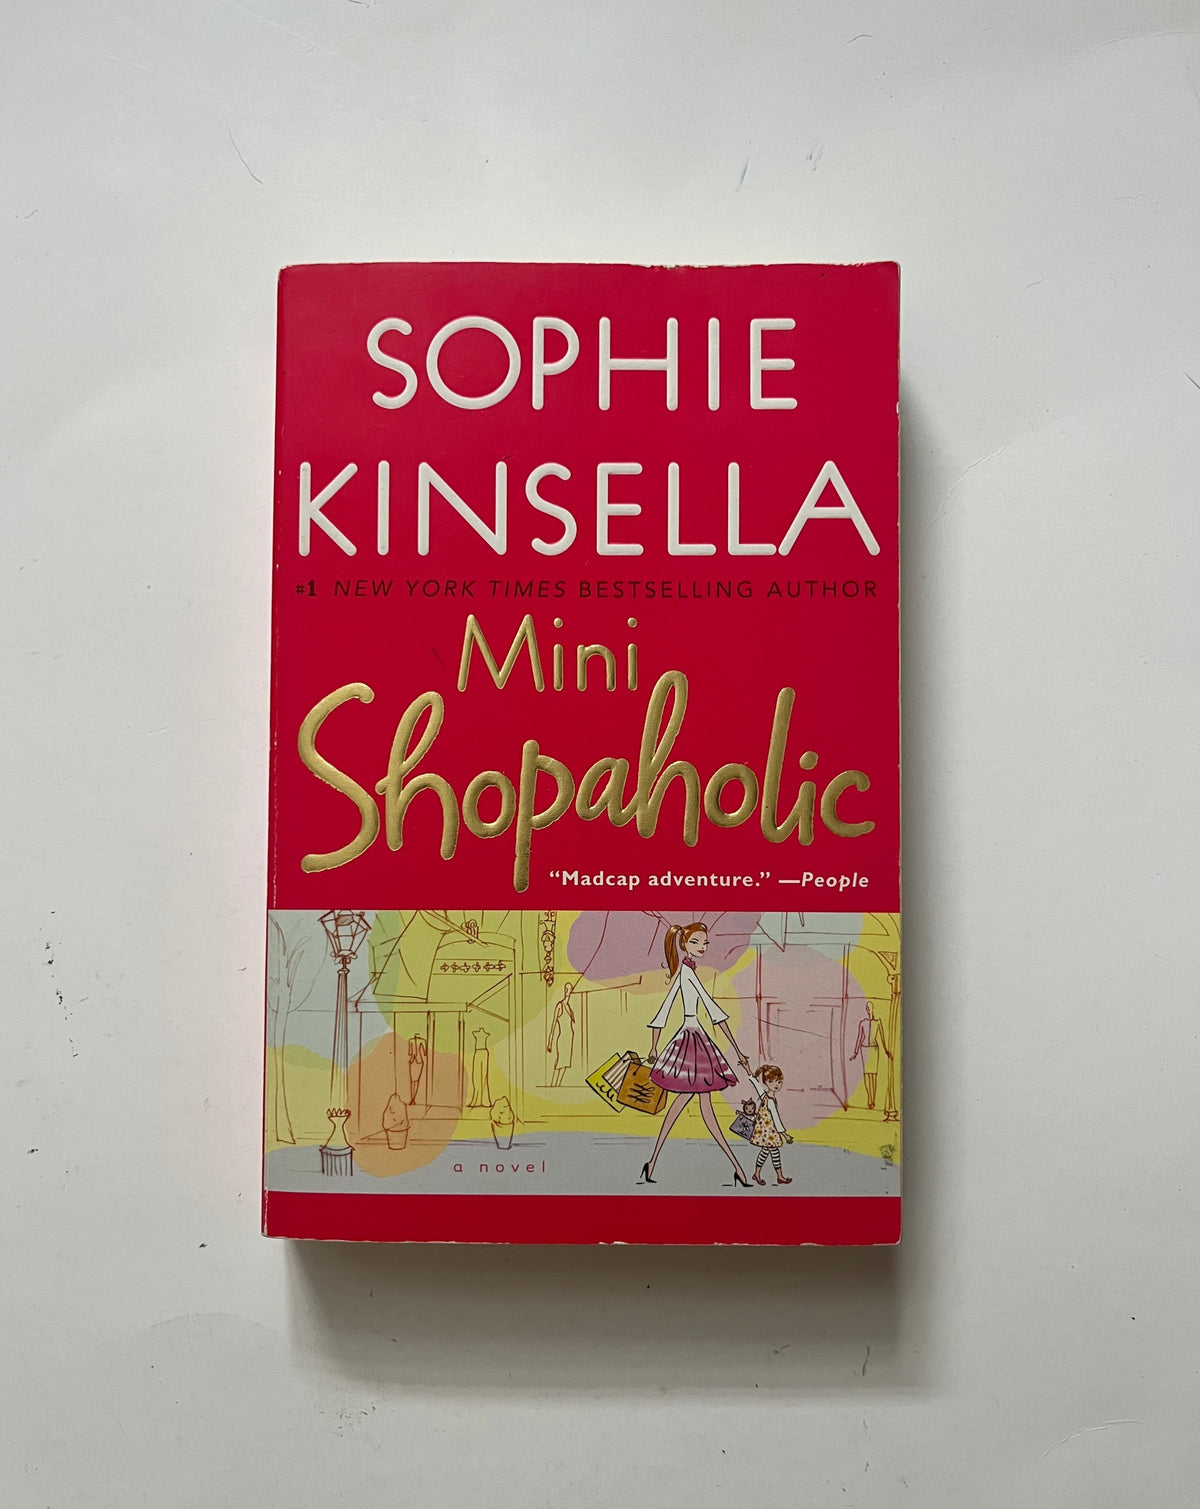 Mini Shopaholic by Sophie Kinsella